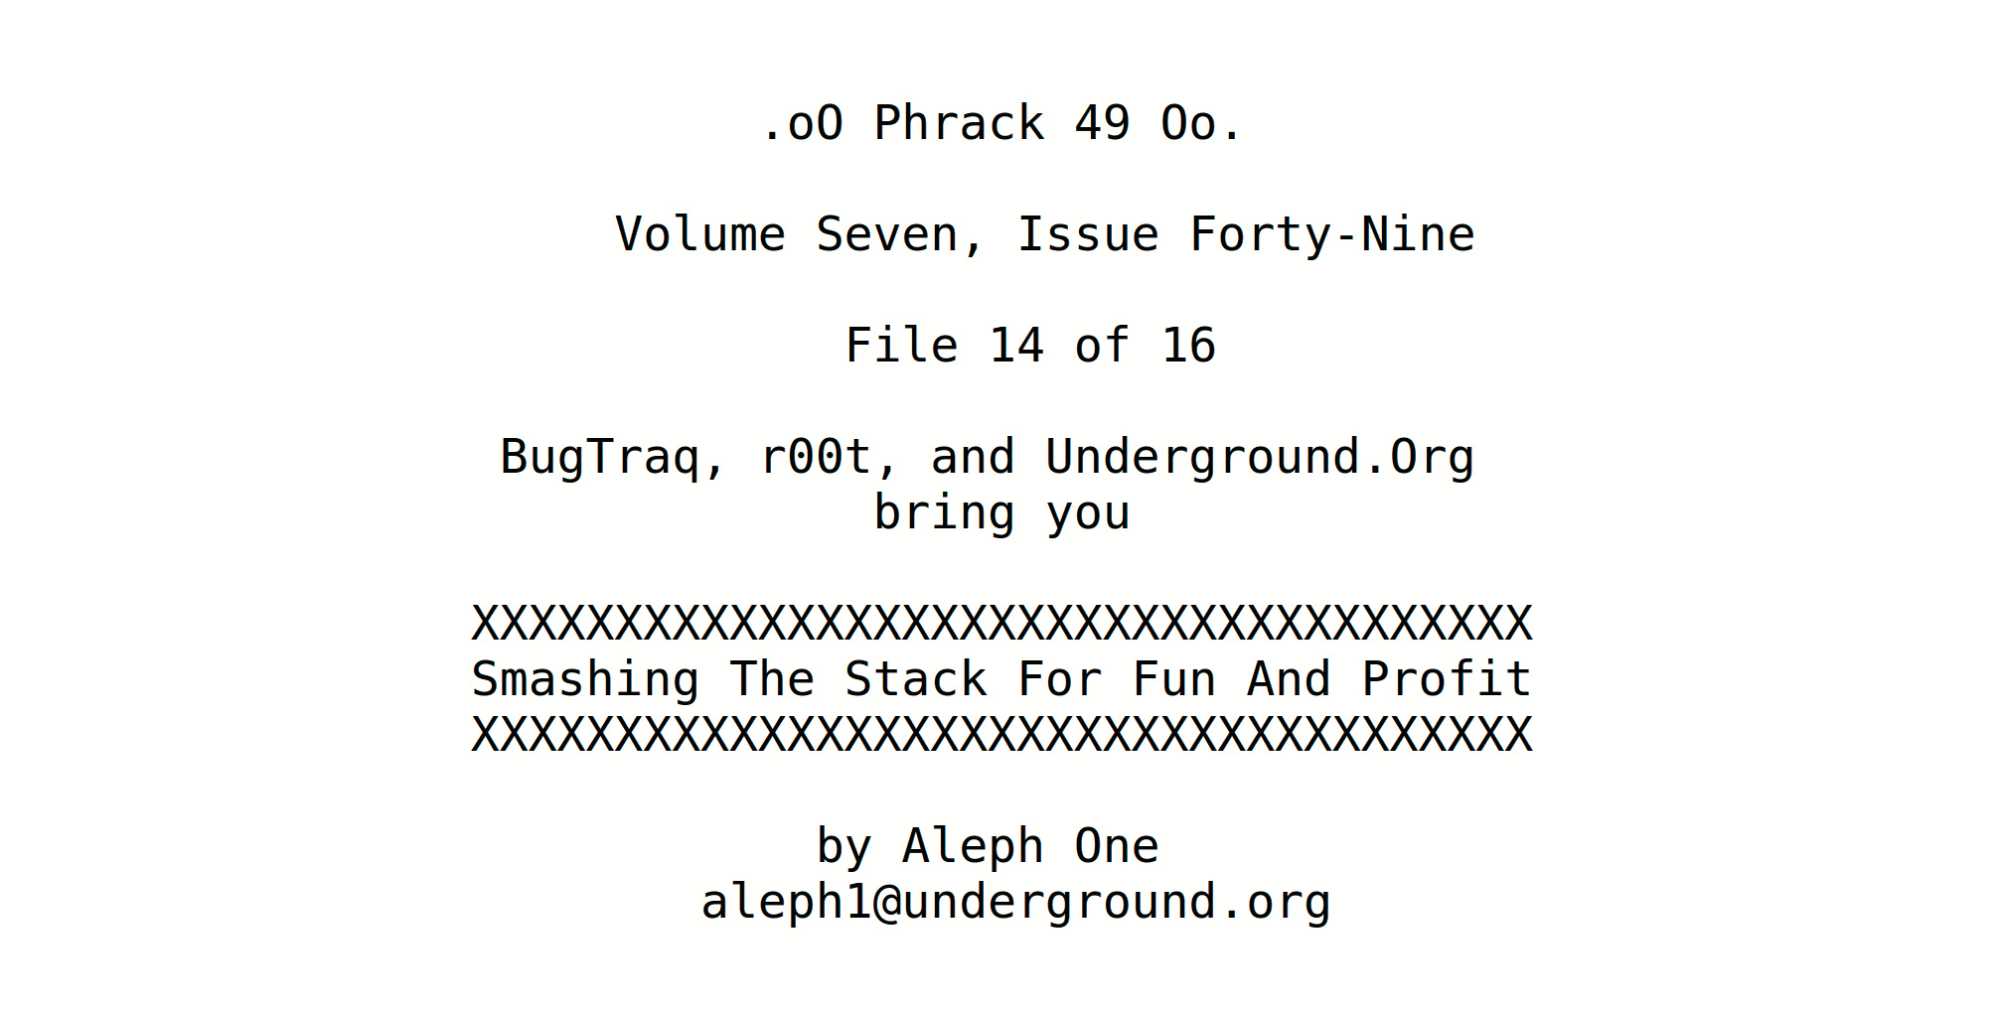 Das Standardwerk zum professionellen Ausnutzen eines Pufferüberlaufs auf dem Stack erschien im Hackermagazin Phrack.